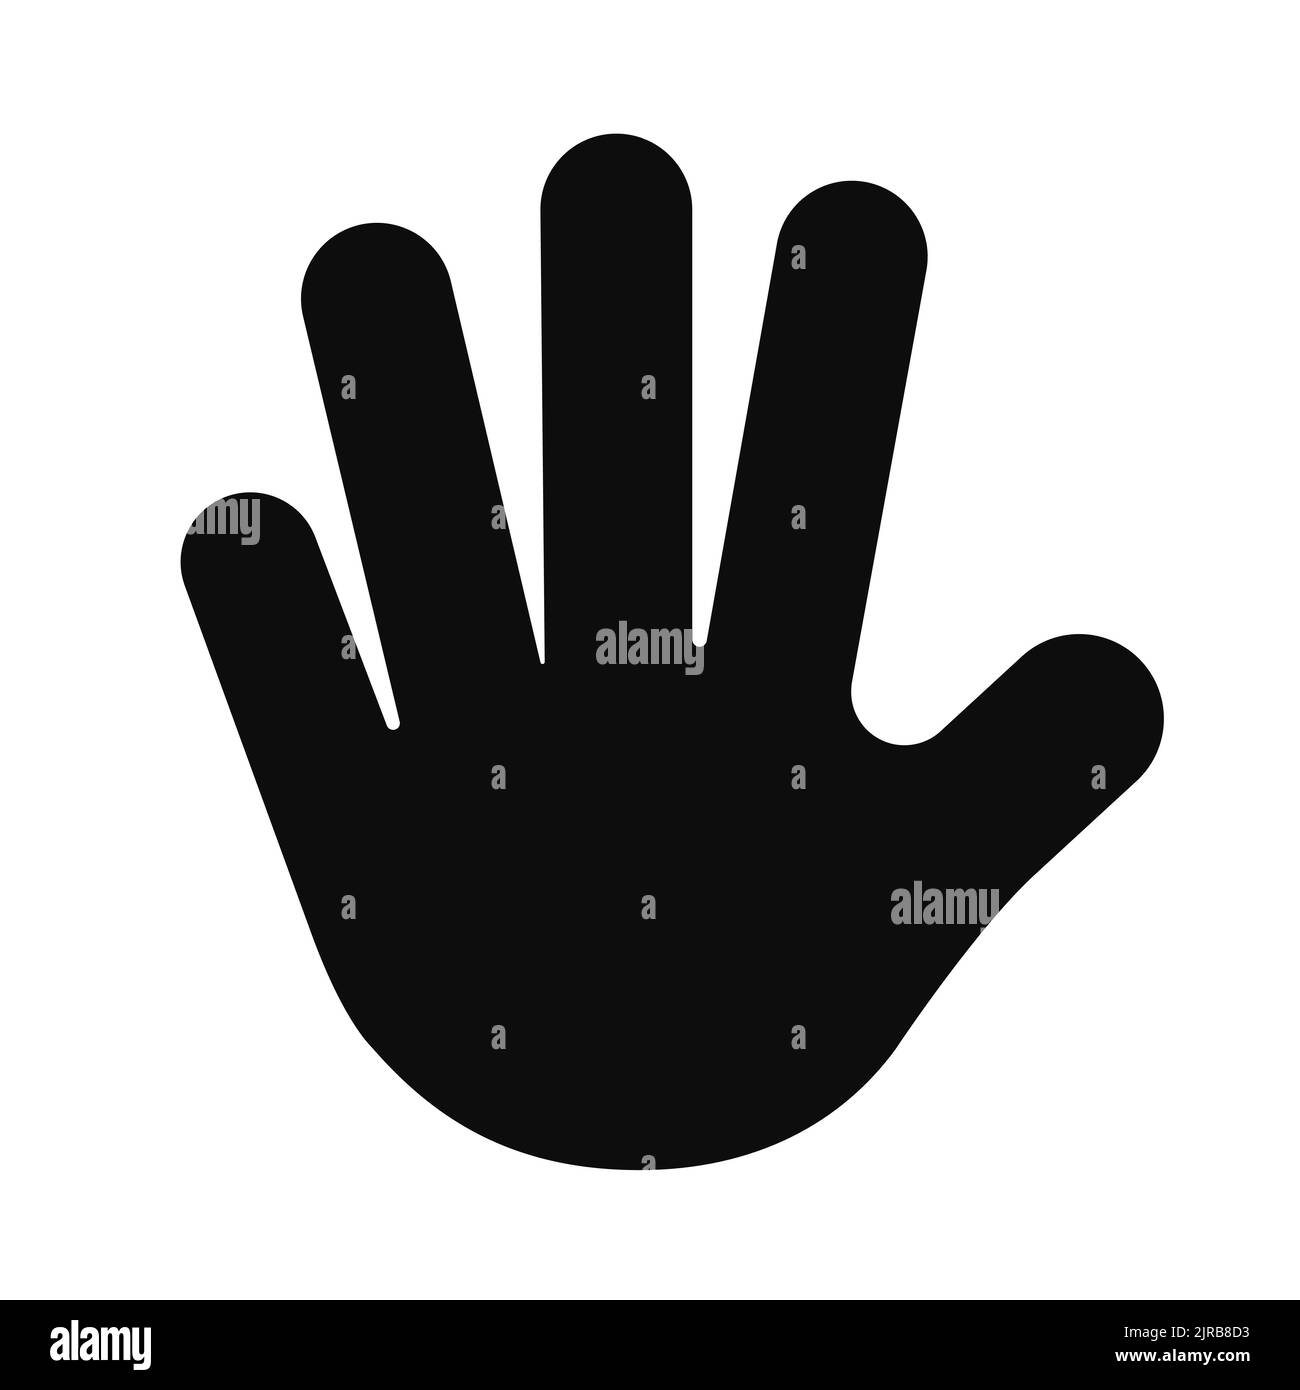 Öffnen Sie die ausgestreckte Hand, und zeigen Sie fünf Finger, die zur Begrüßung oder Stoppgeste ausgestreckt sind. Vektorgrafik. Stock Vektor